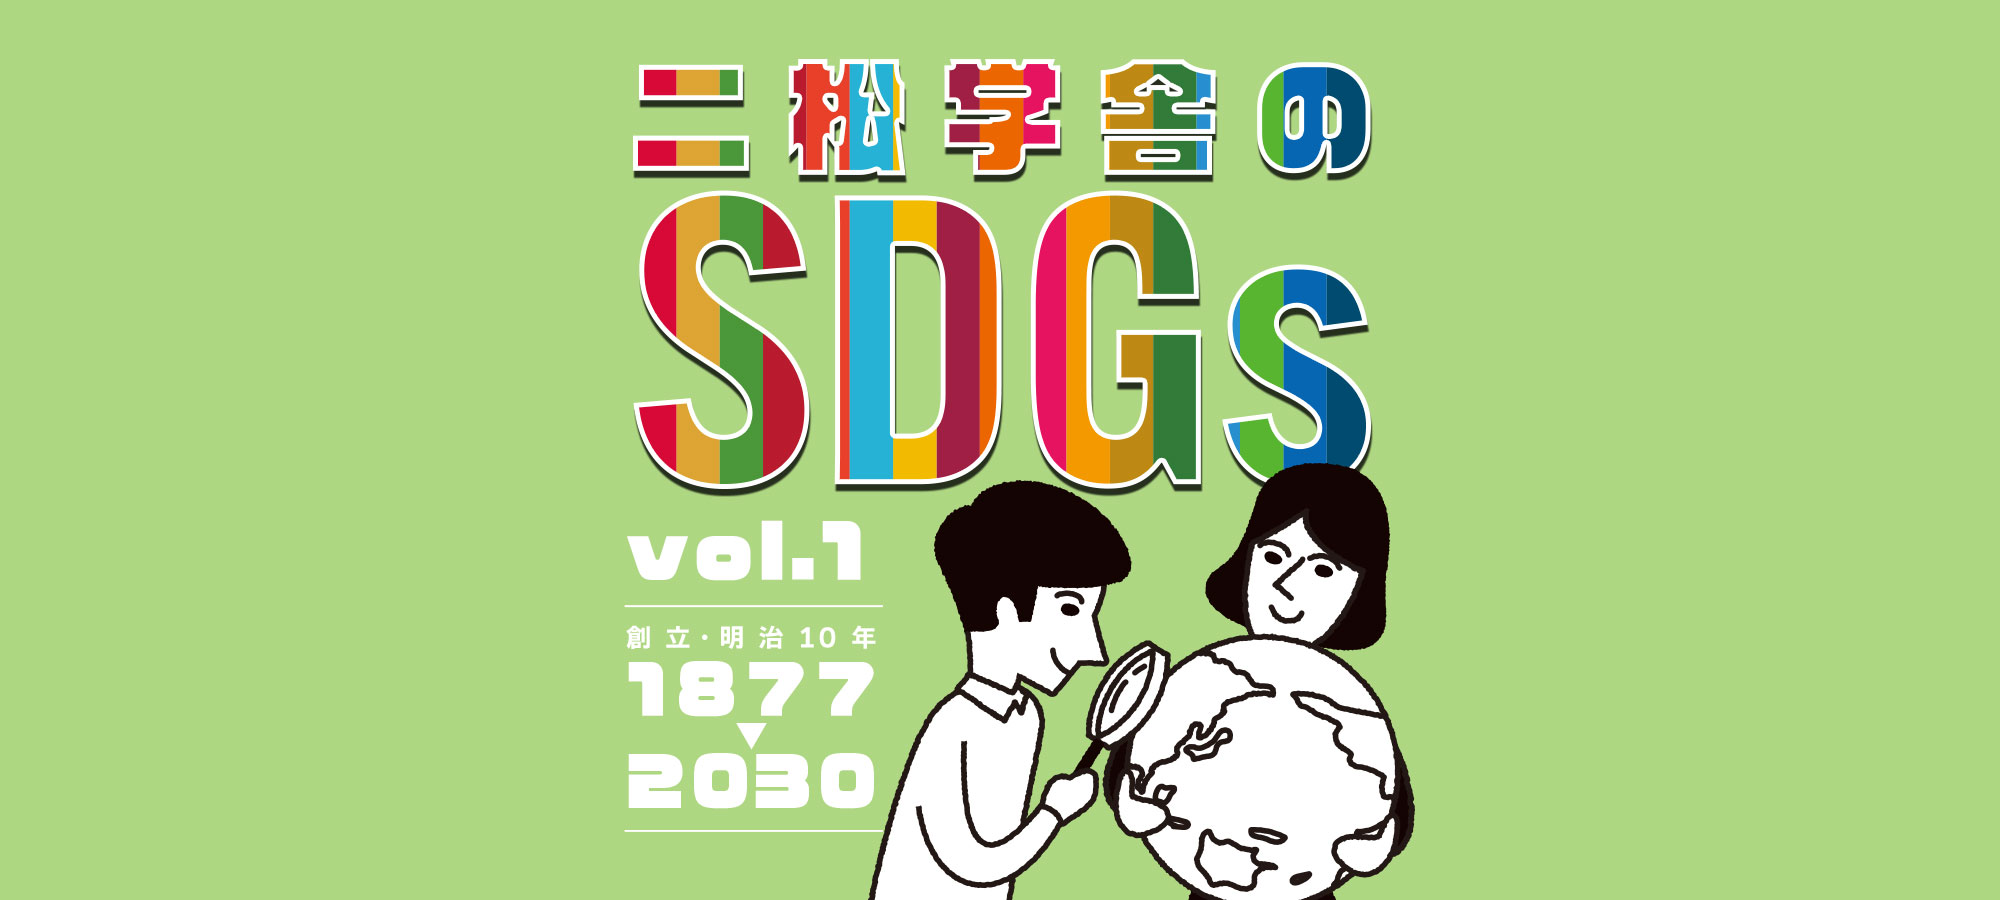 二松学舎のSDGs vol.1